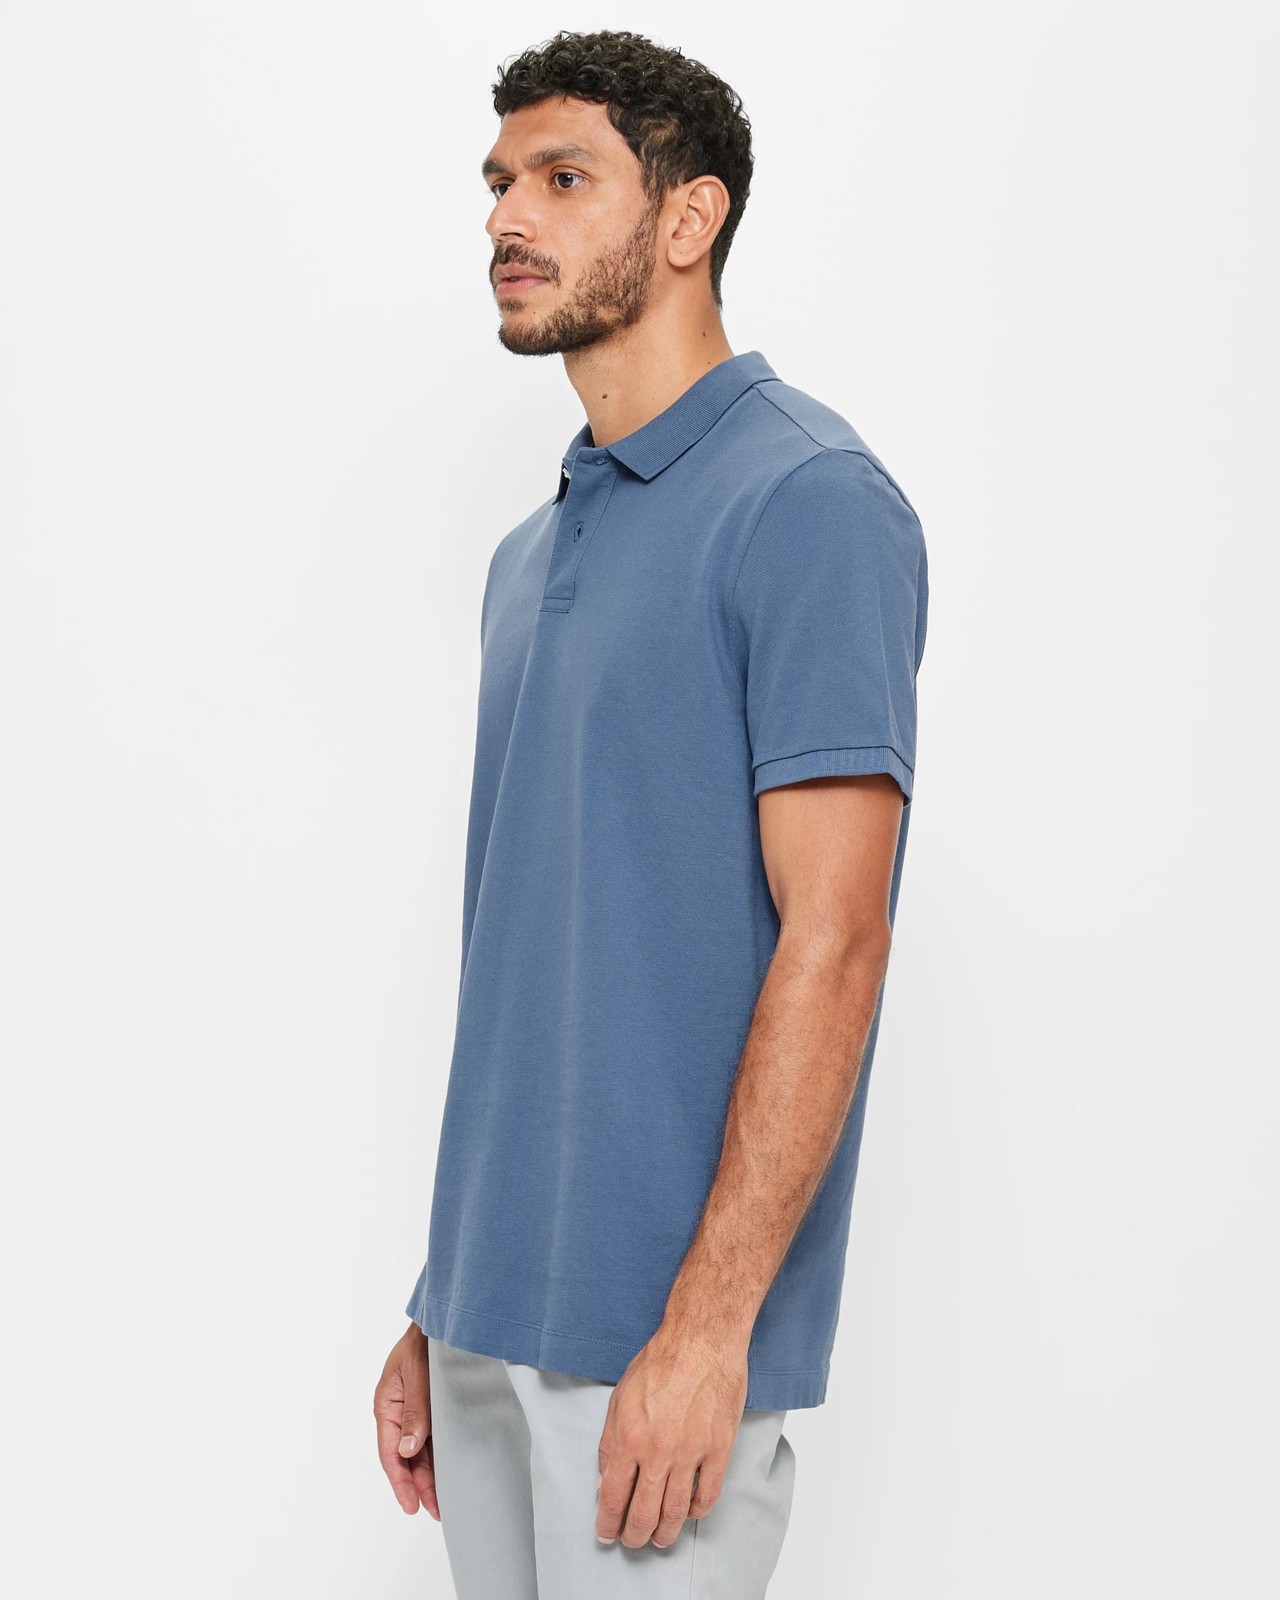 Pique Polo Shirt - Indigo | Target Australia